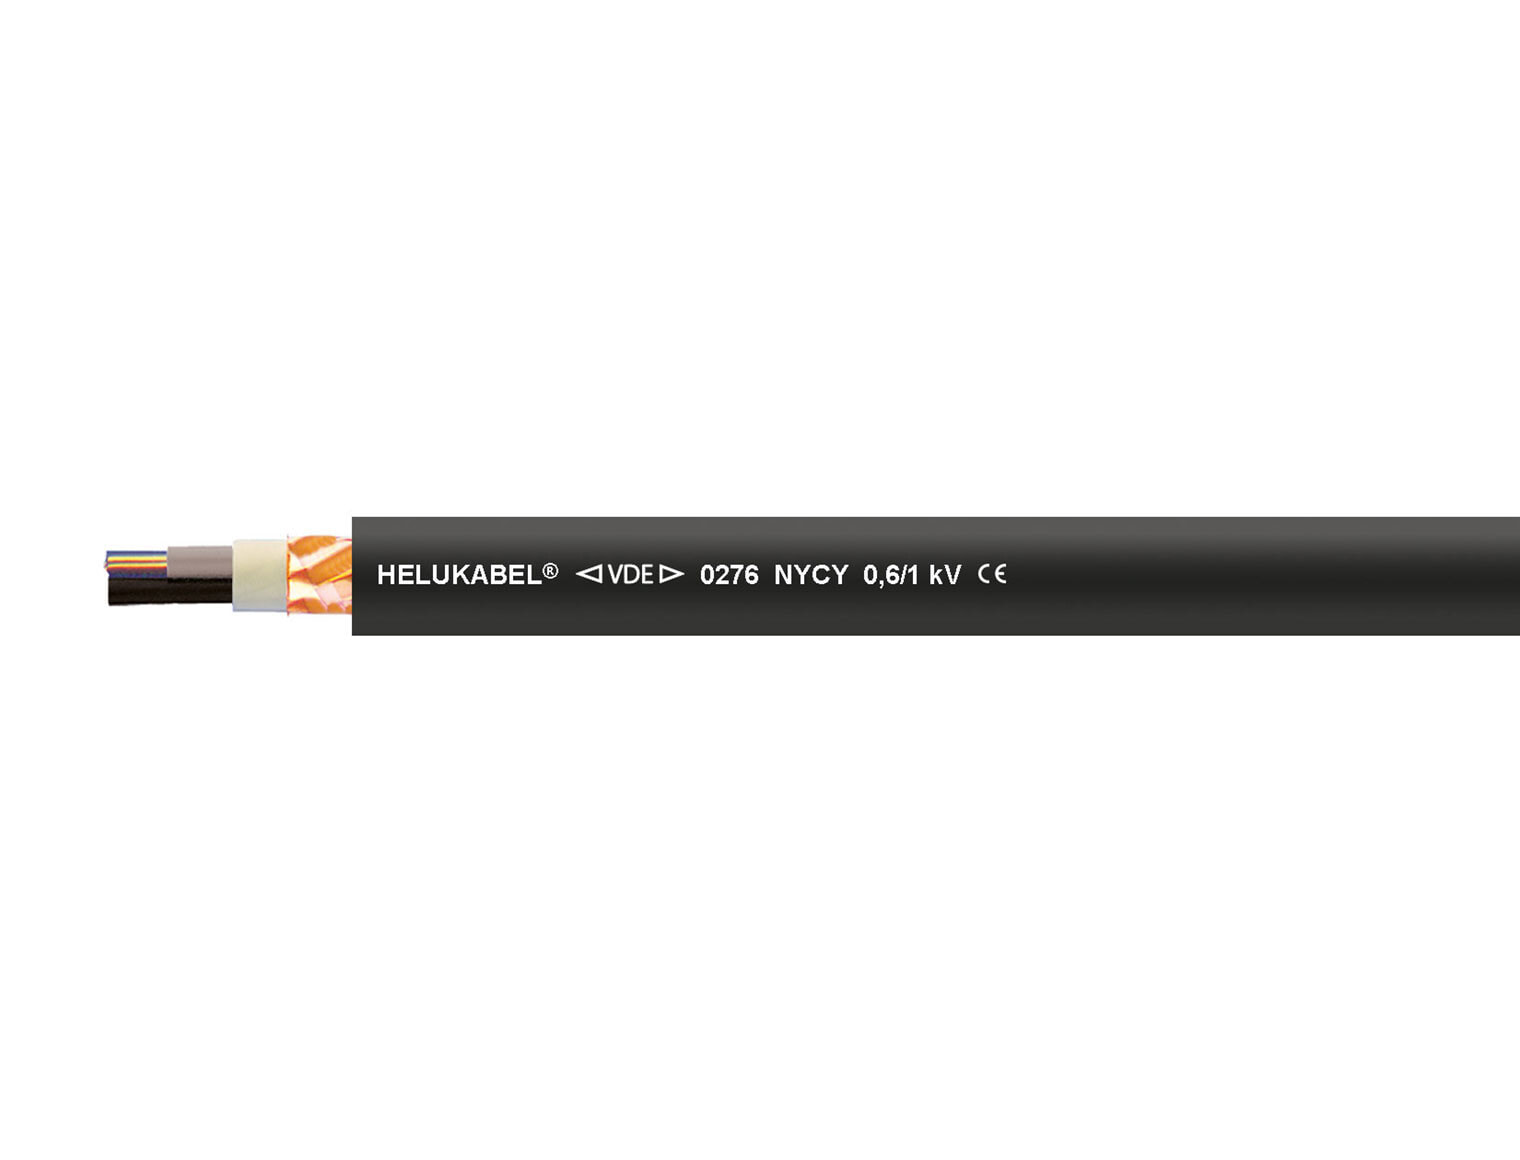 Helukabel 32202 - Low voltage cable - Black - Cooper - 1.5 mm² - 52 kg/km - -5 - 50 °C